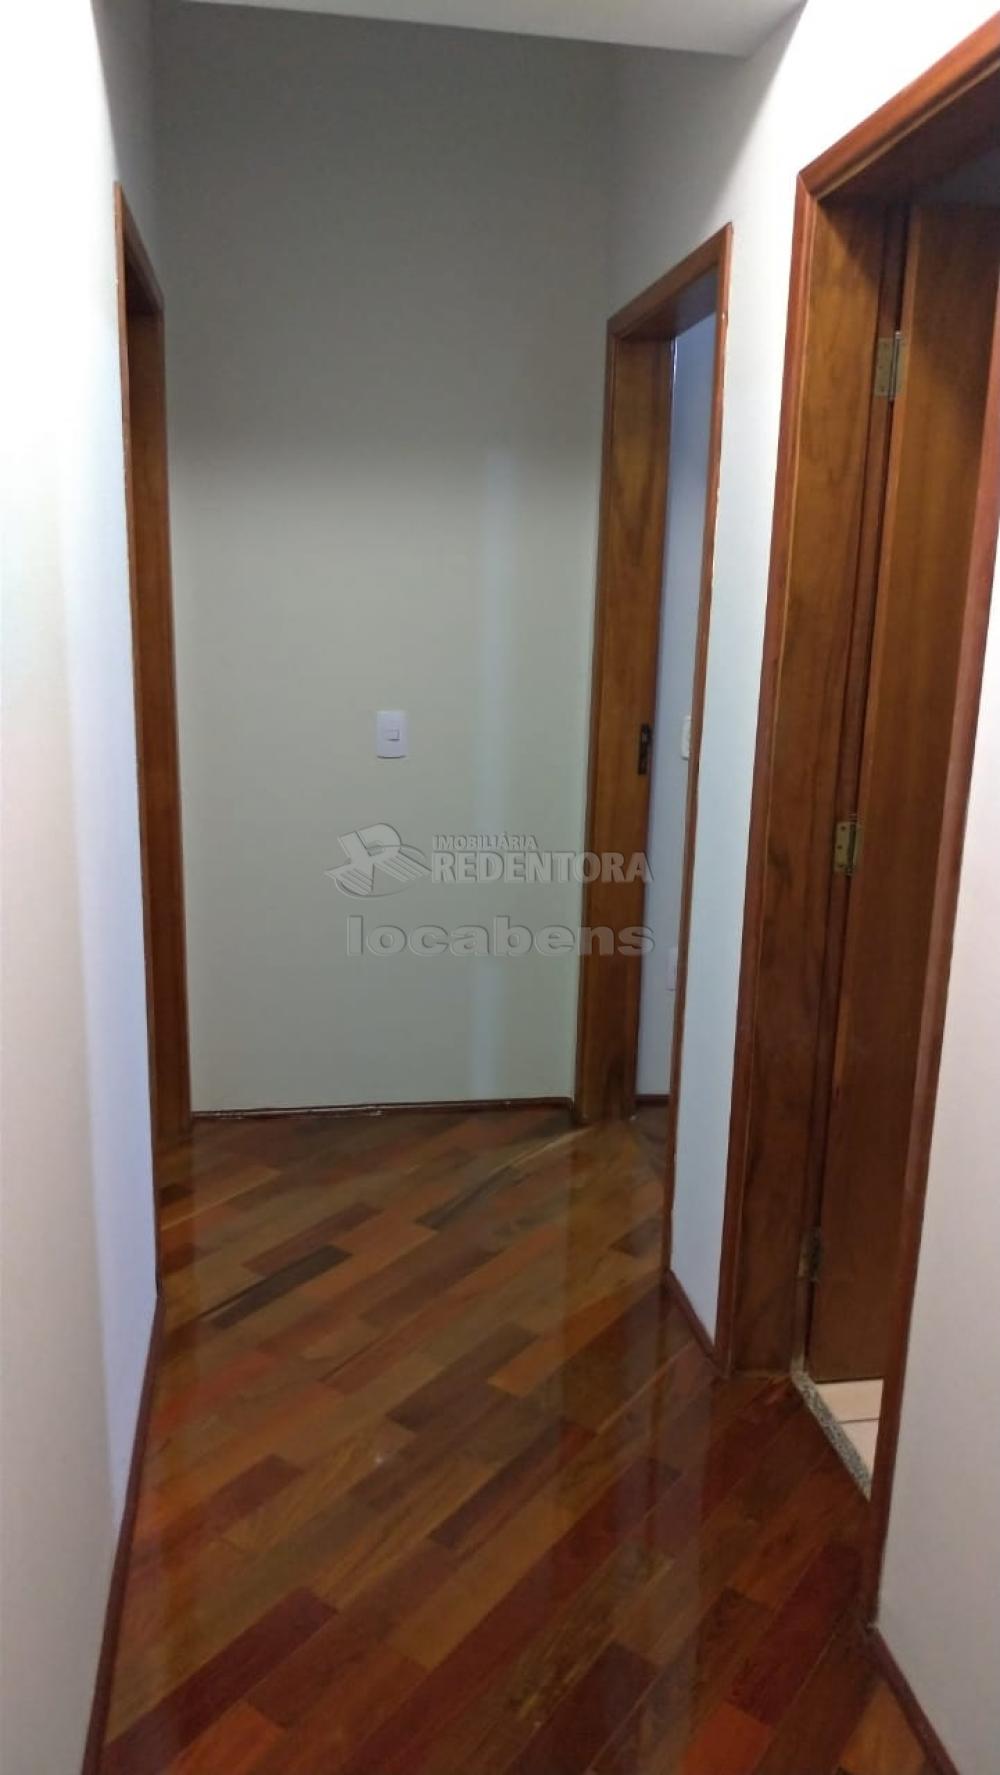 Comprar Apartamento / Padrão em São José do Rio Preto apenas R$ 410.000,00 - Foto 2